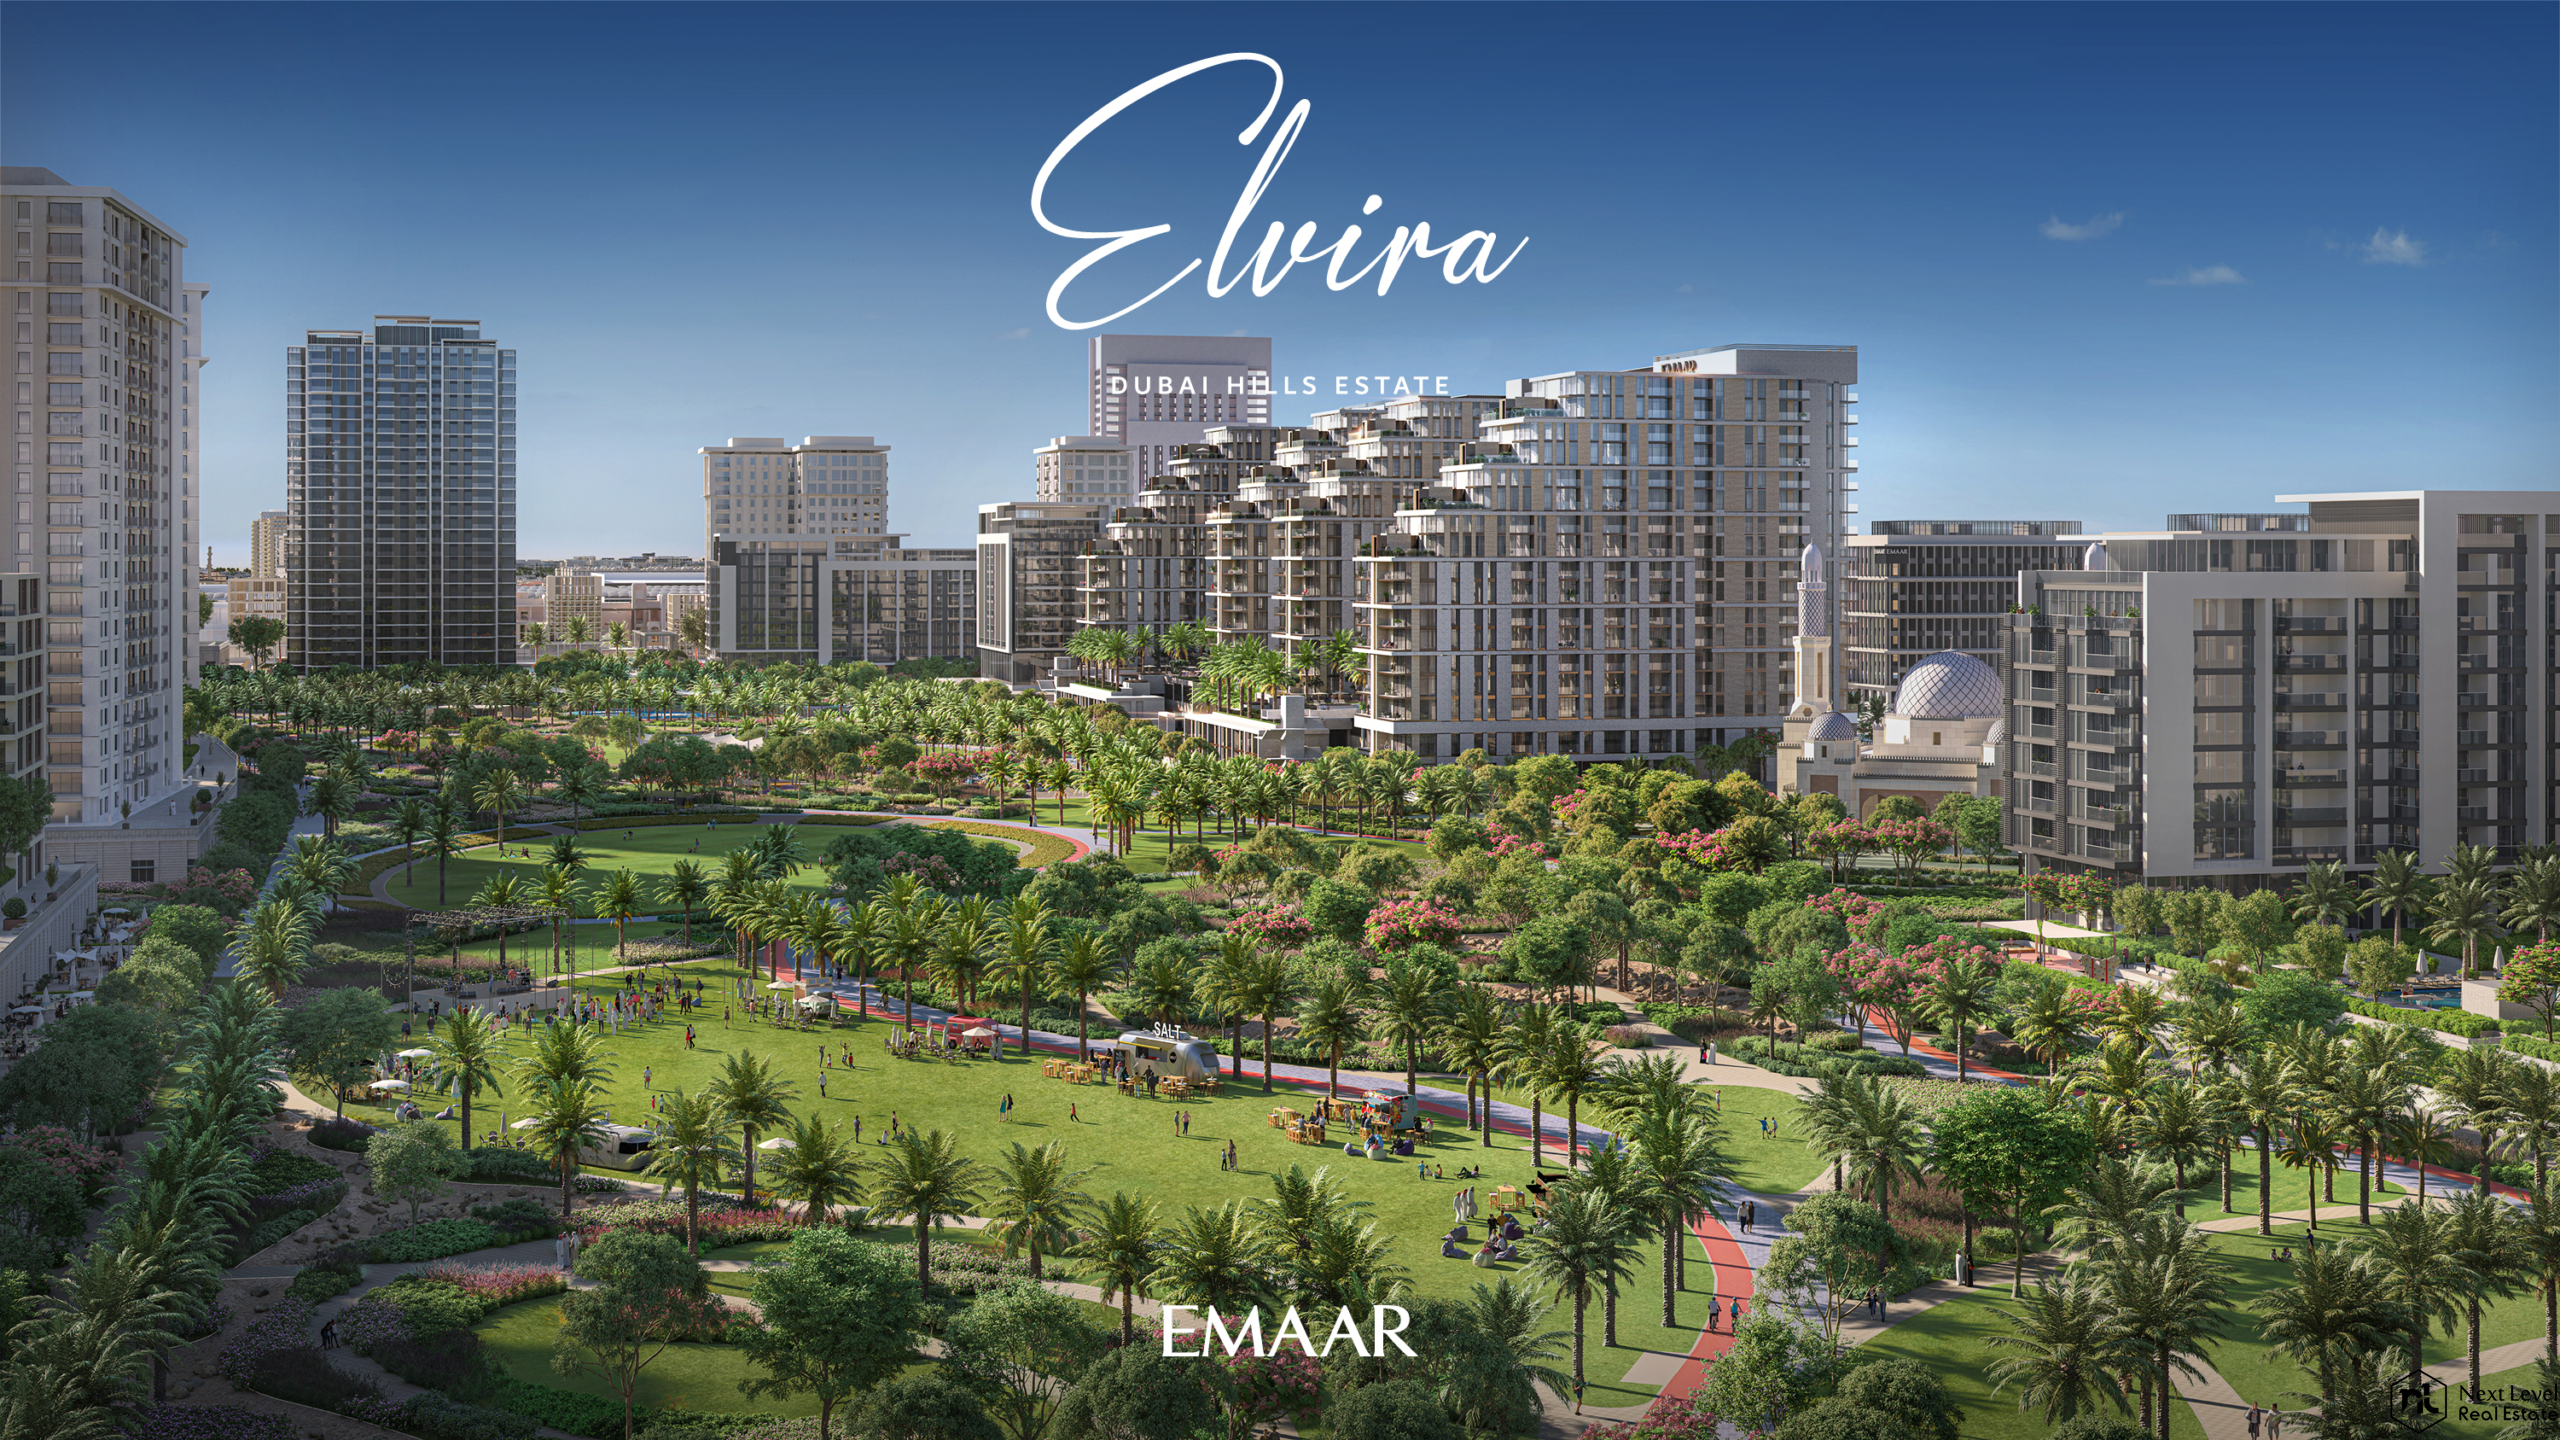 Elvira Emaar Properties